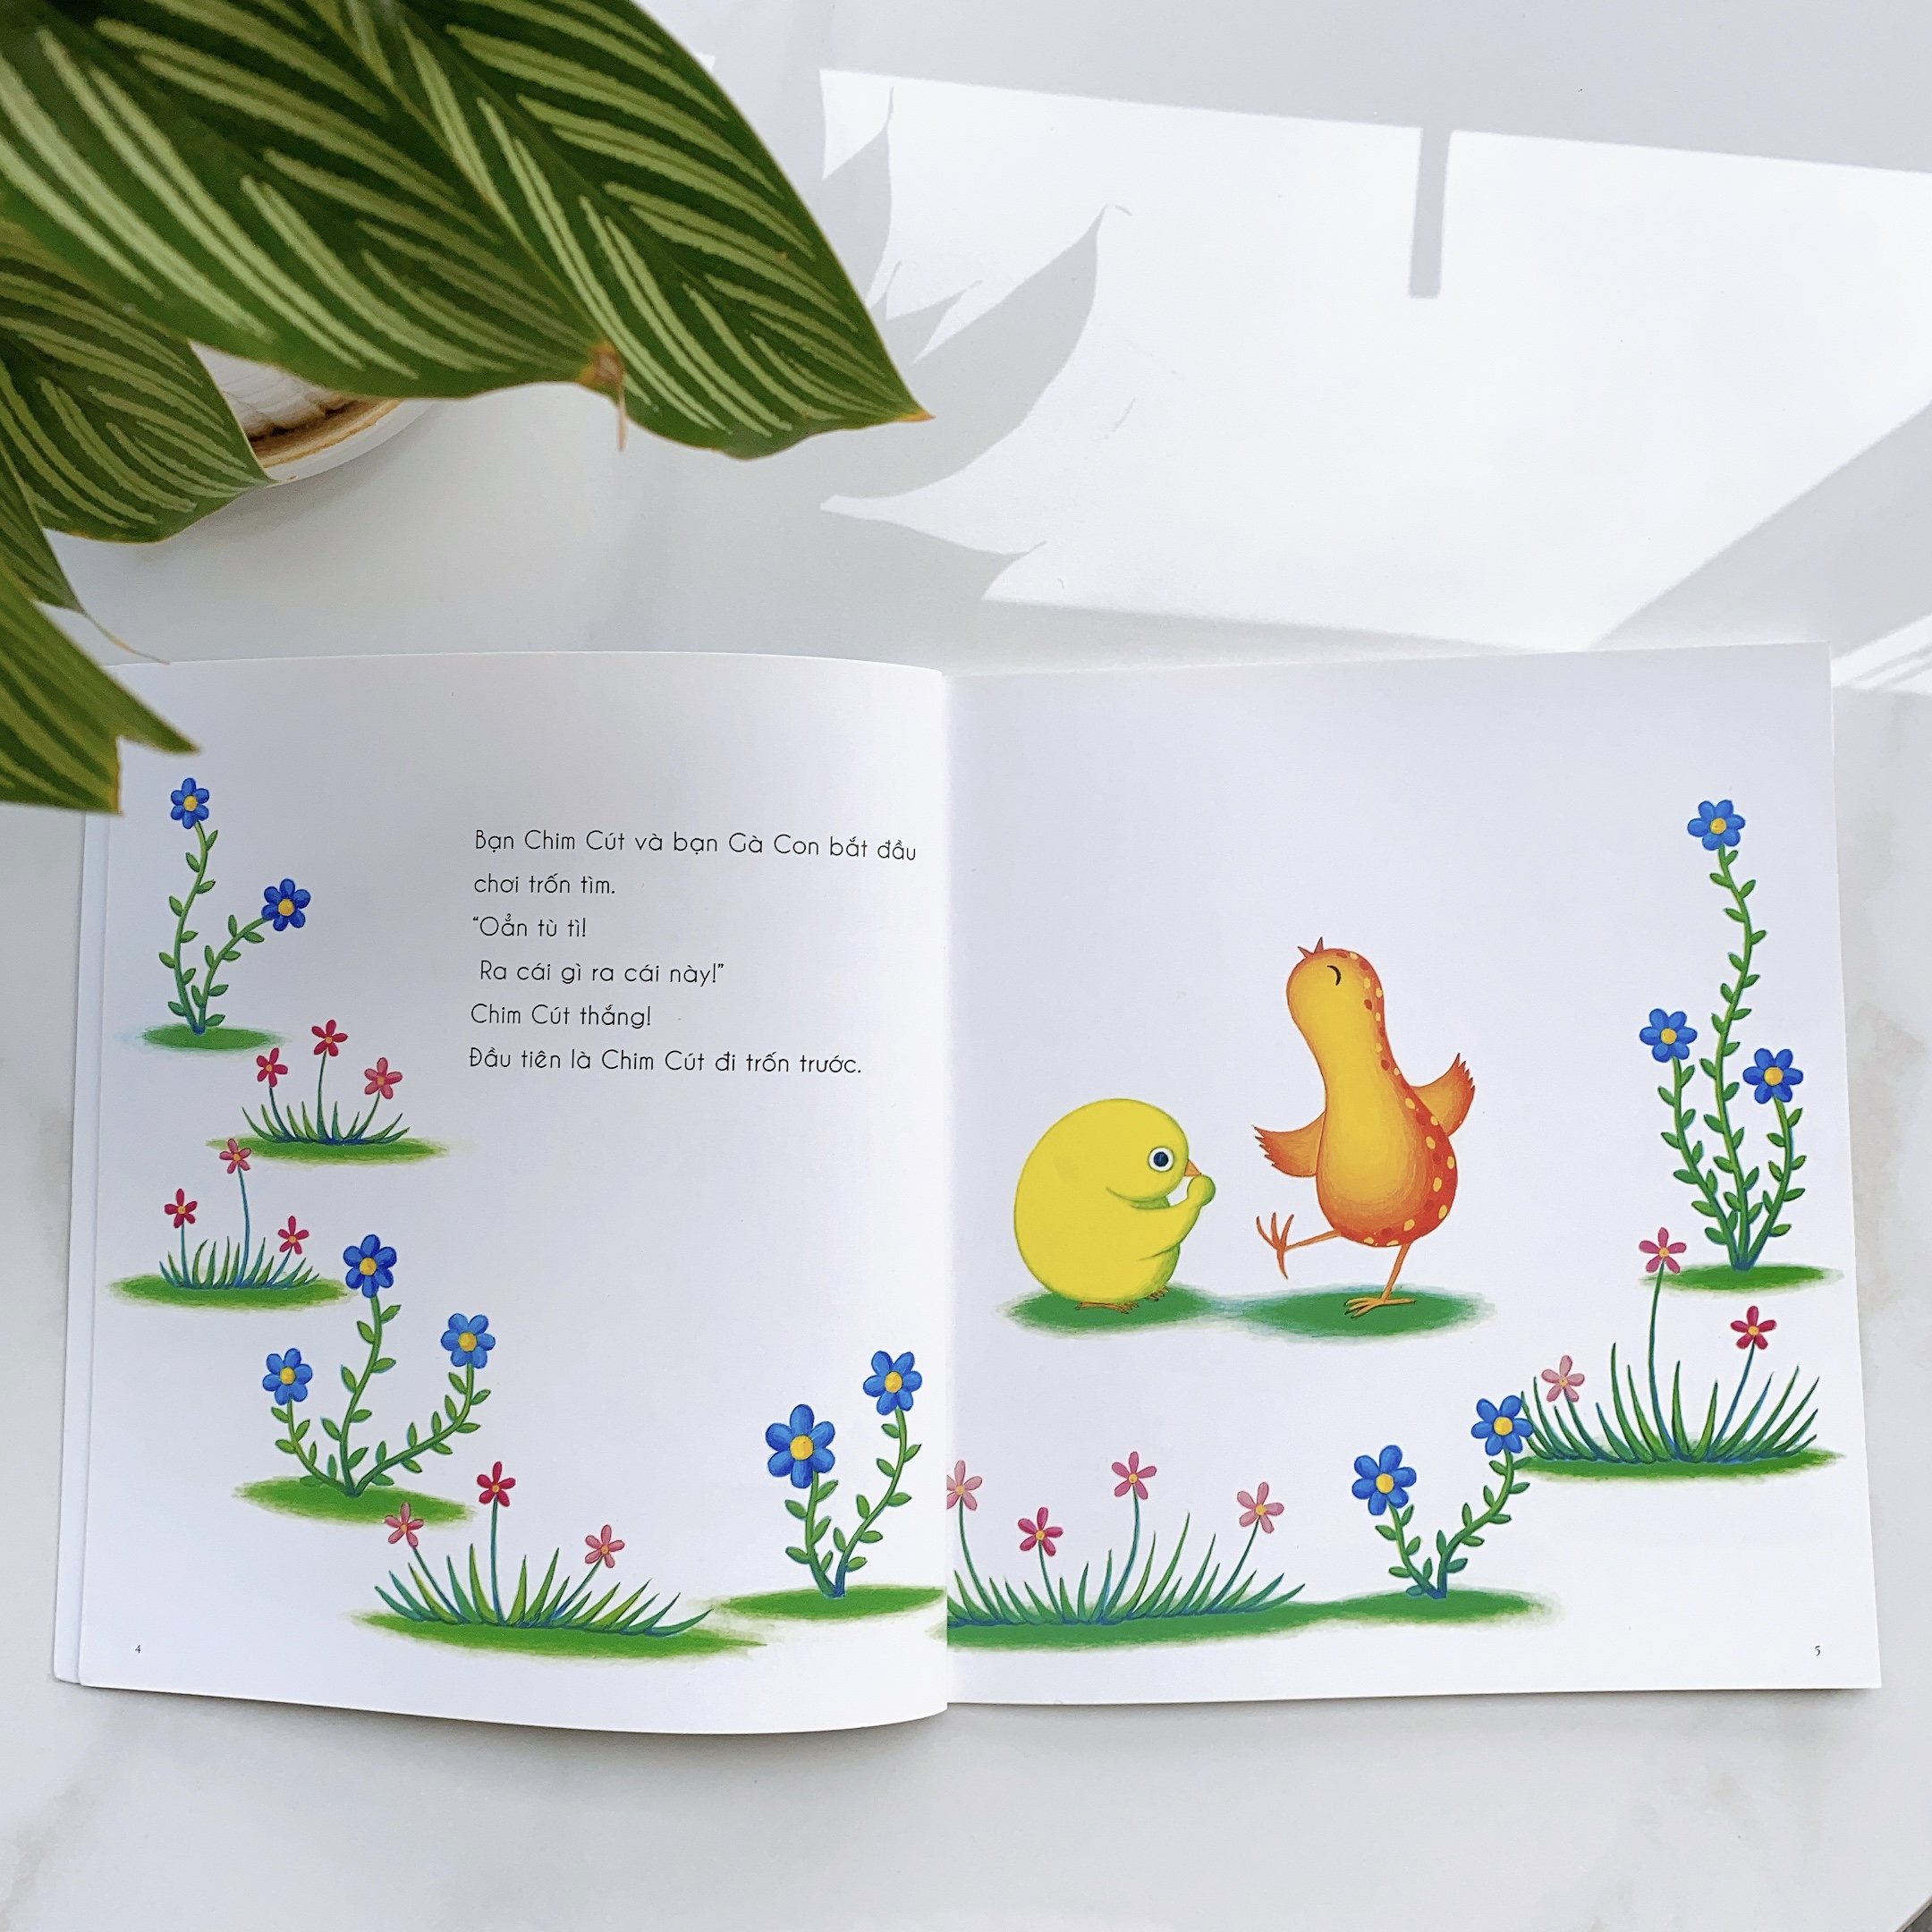 Hình ảnh Sách cho bé từ 0-3 tuổi - Nhận biết, Quan sát - Bạn chim cút chơi trốn tìm (Truyện tranh Ehon Nhật Bản)